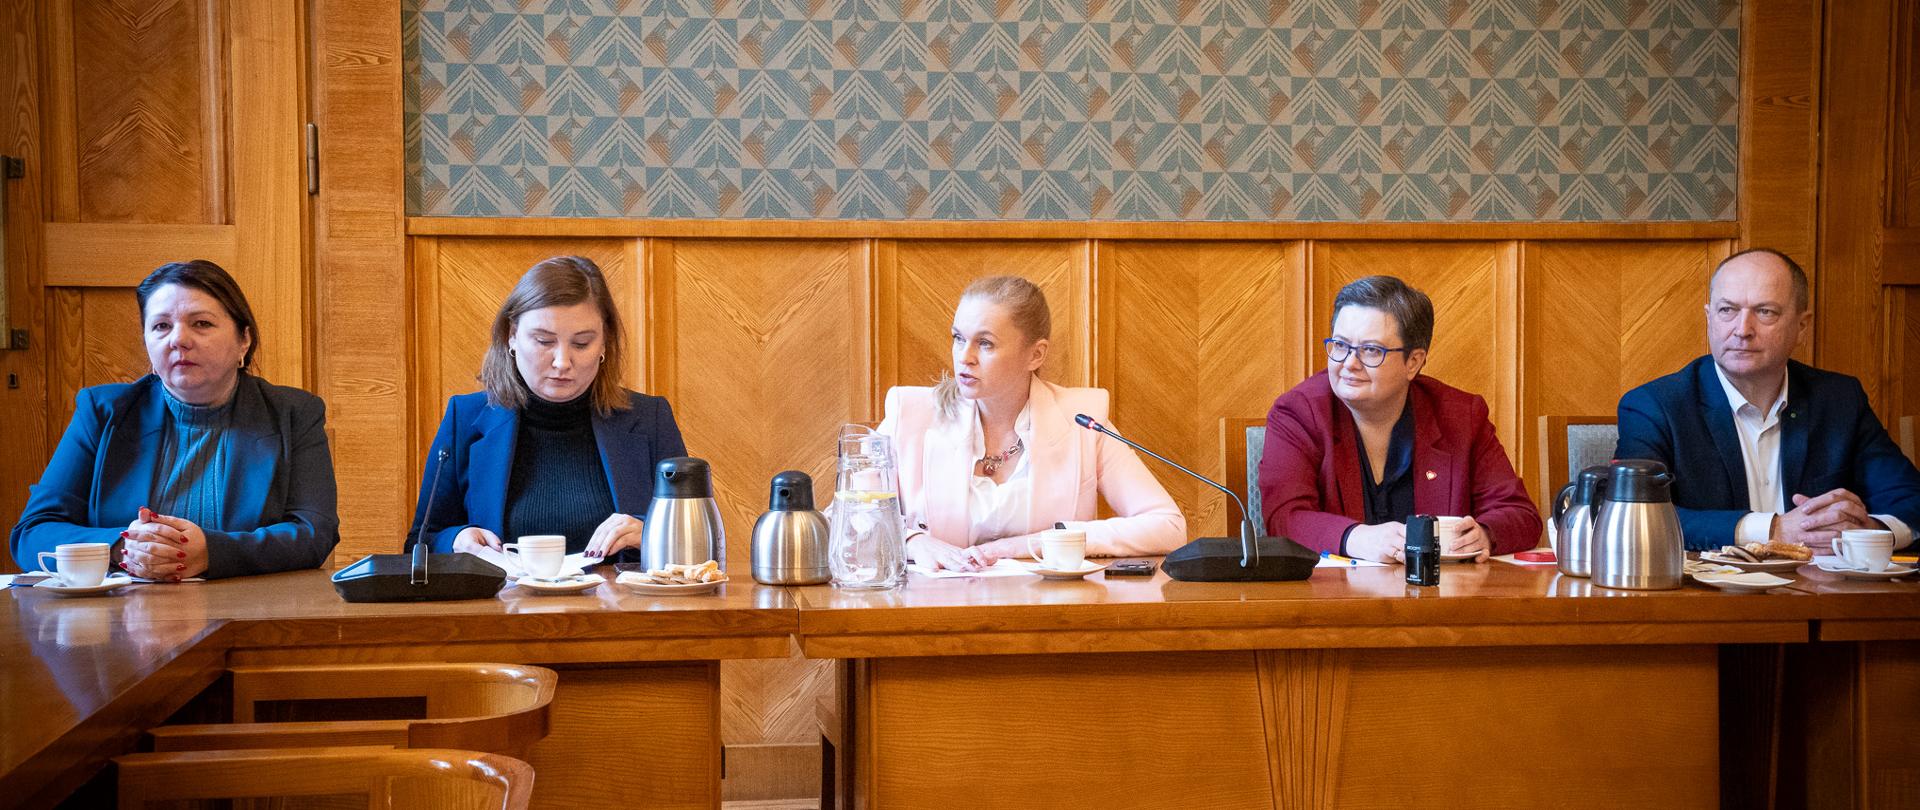 Cztery kobiety i mężczyzna siedzą przy stole. W środku w białej marynarce minister Nowacka mówi do mikrofonu.